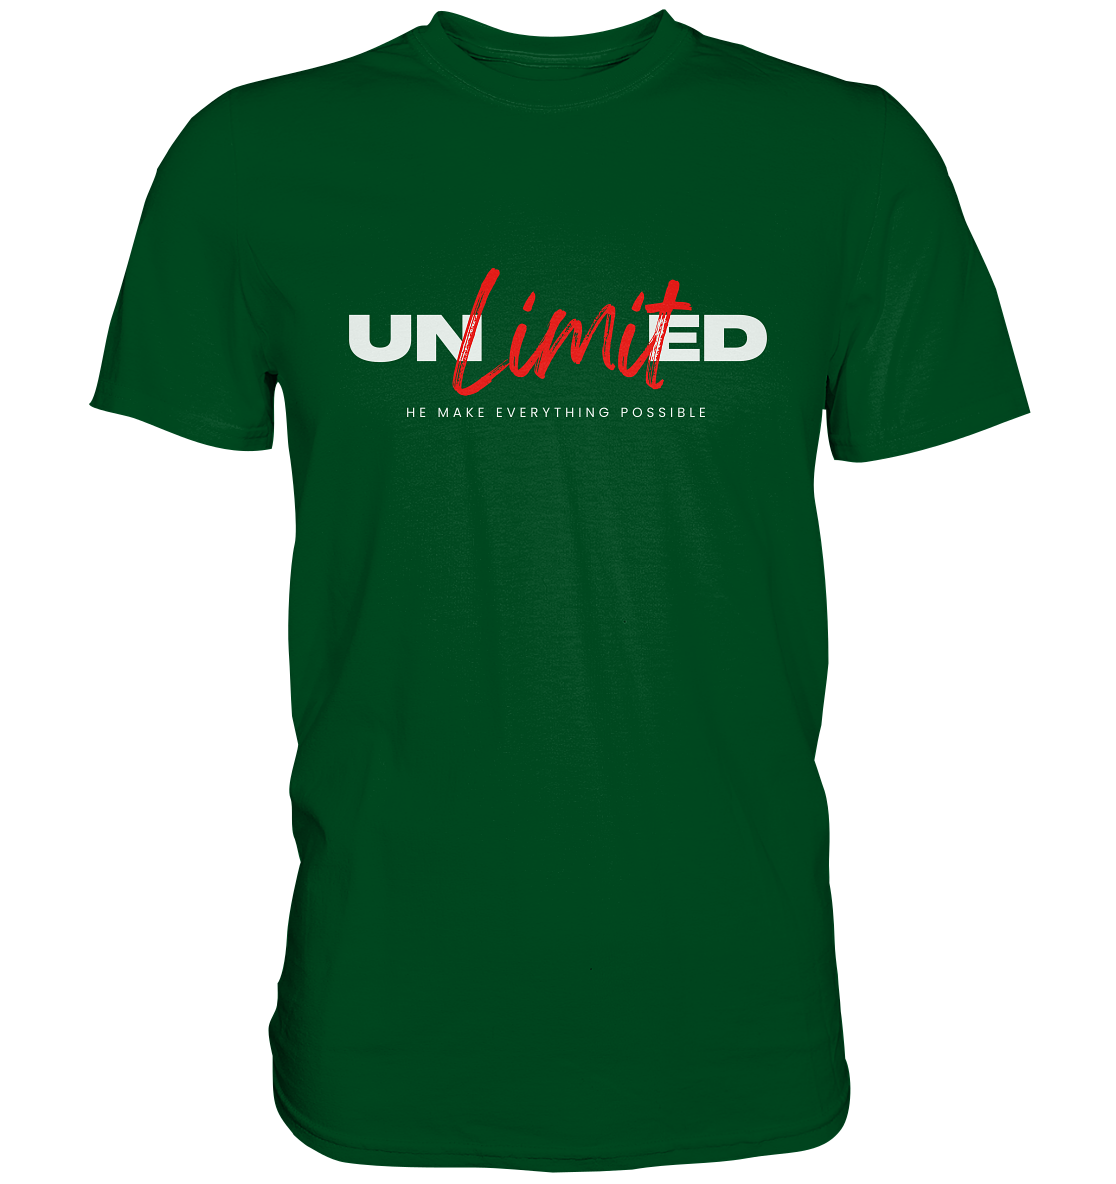 Unbegrenzte Möglichkeiten "Unlimited" - Premium Shirt